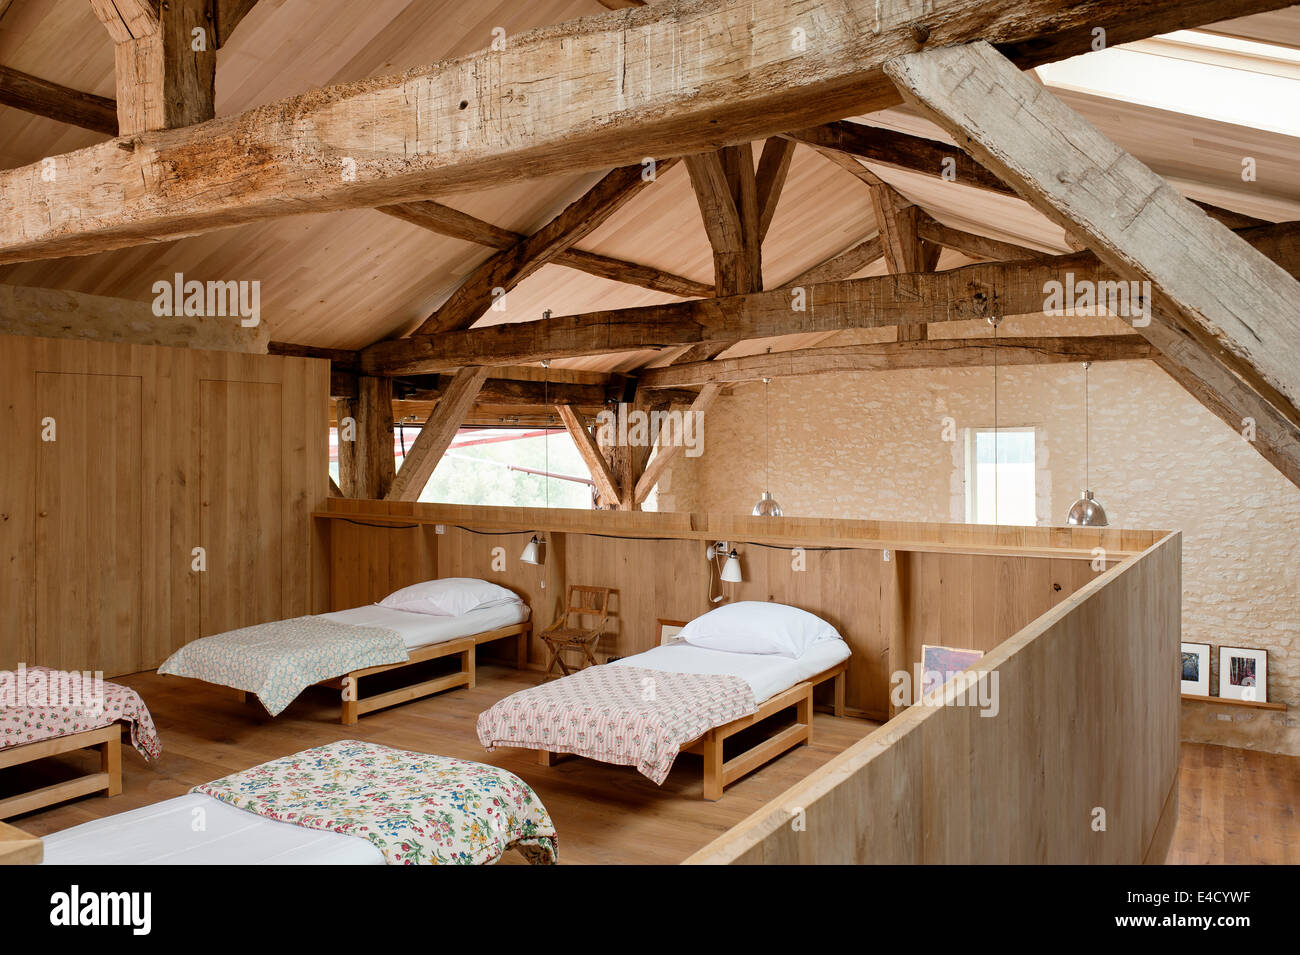 Plan ouvert des dortoirs dans ancienne grange avec poutres en bois d'origine Banque D'Images